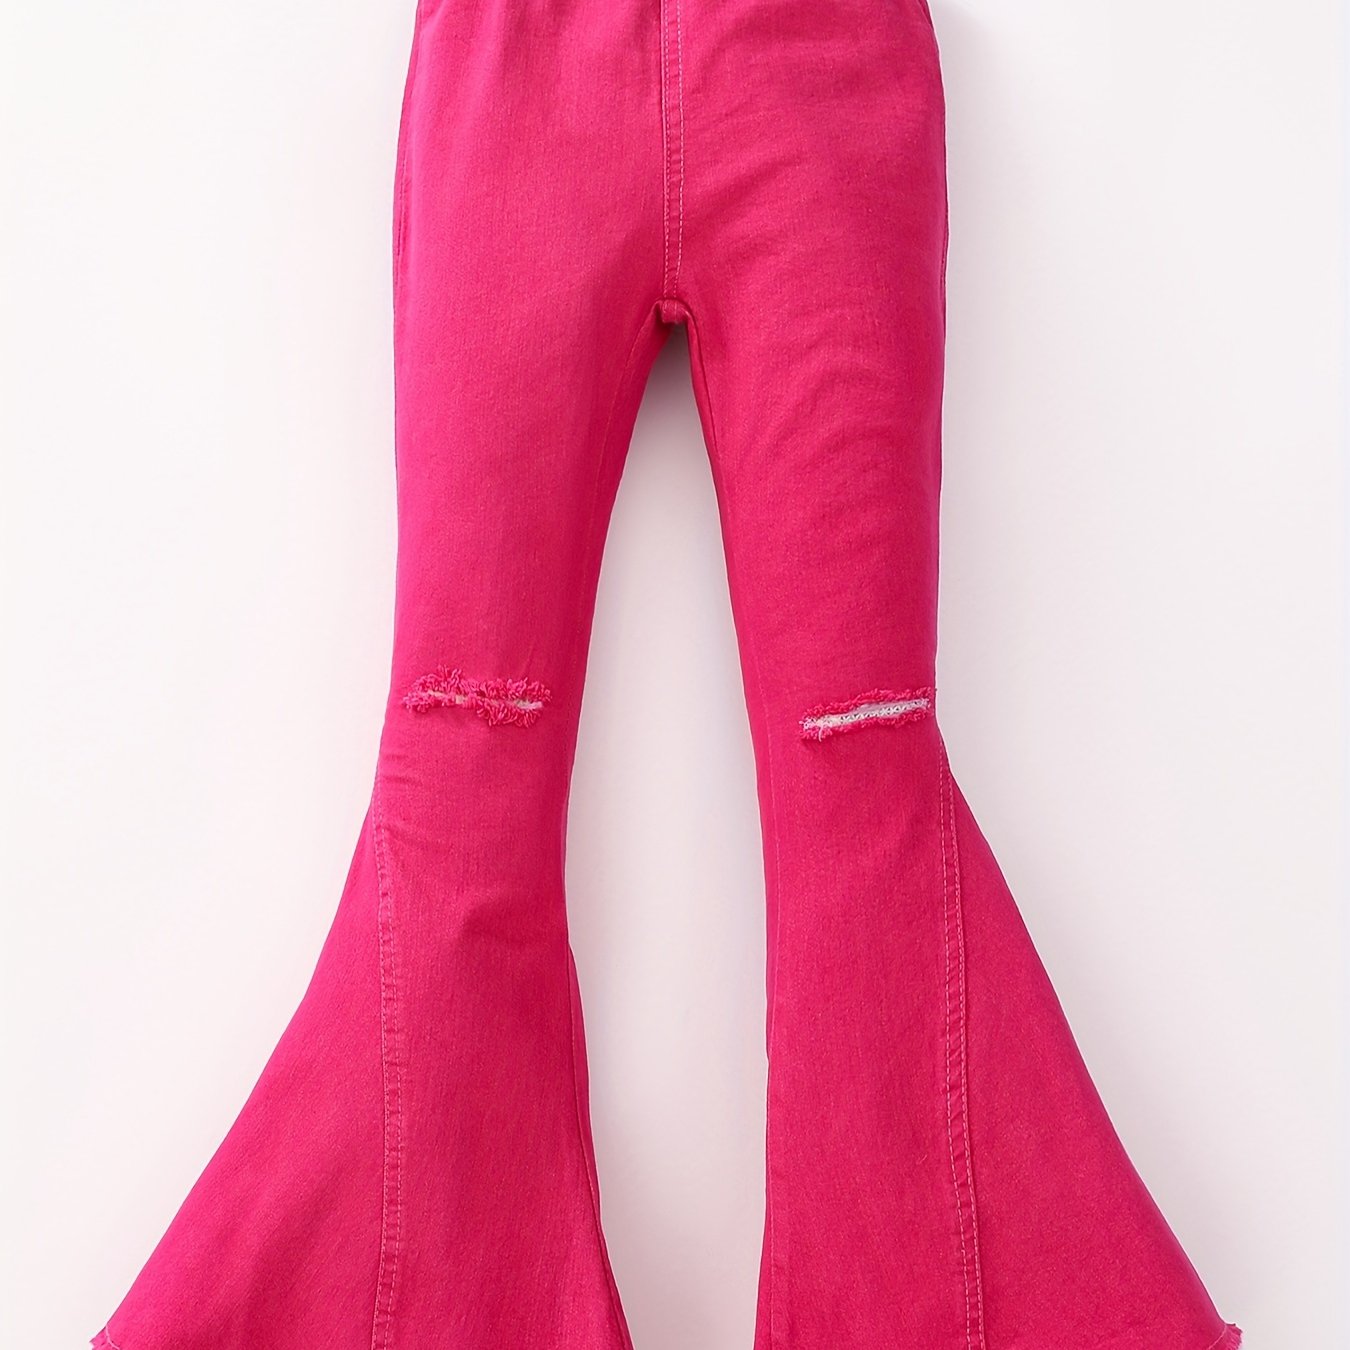 Teenage Girls' Jeans Slim-Fit Micro Bell-Bottom Pants Elastic